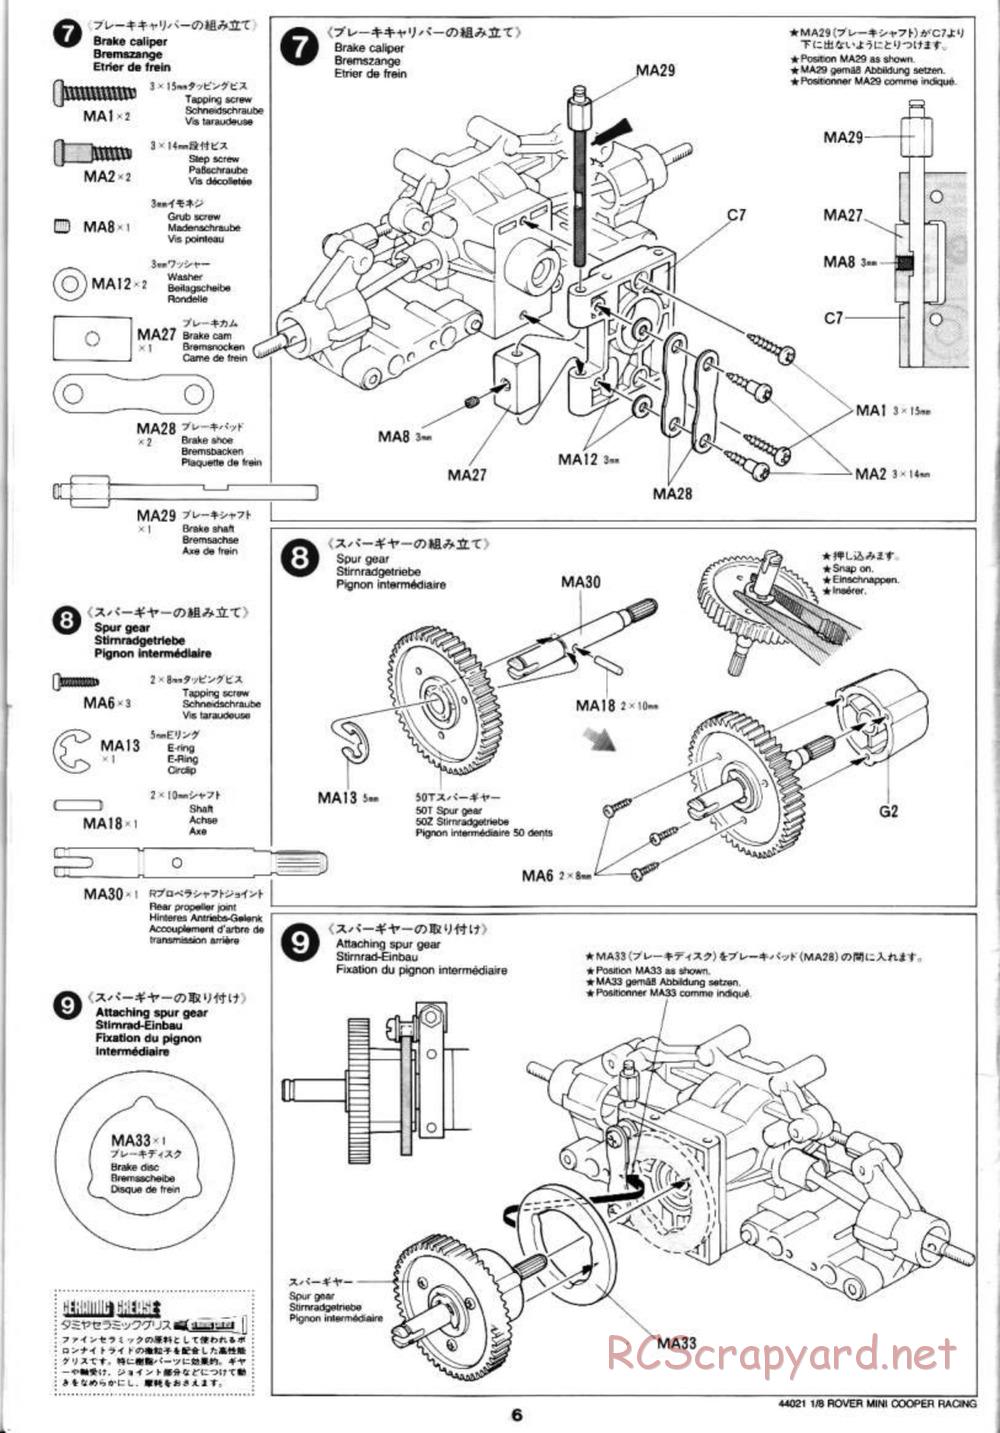 Tamiya - Rover Mini Cooper Racing - TG10 Mk.1 Chassis - Manual - Page 6